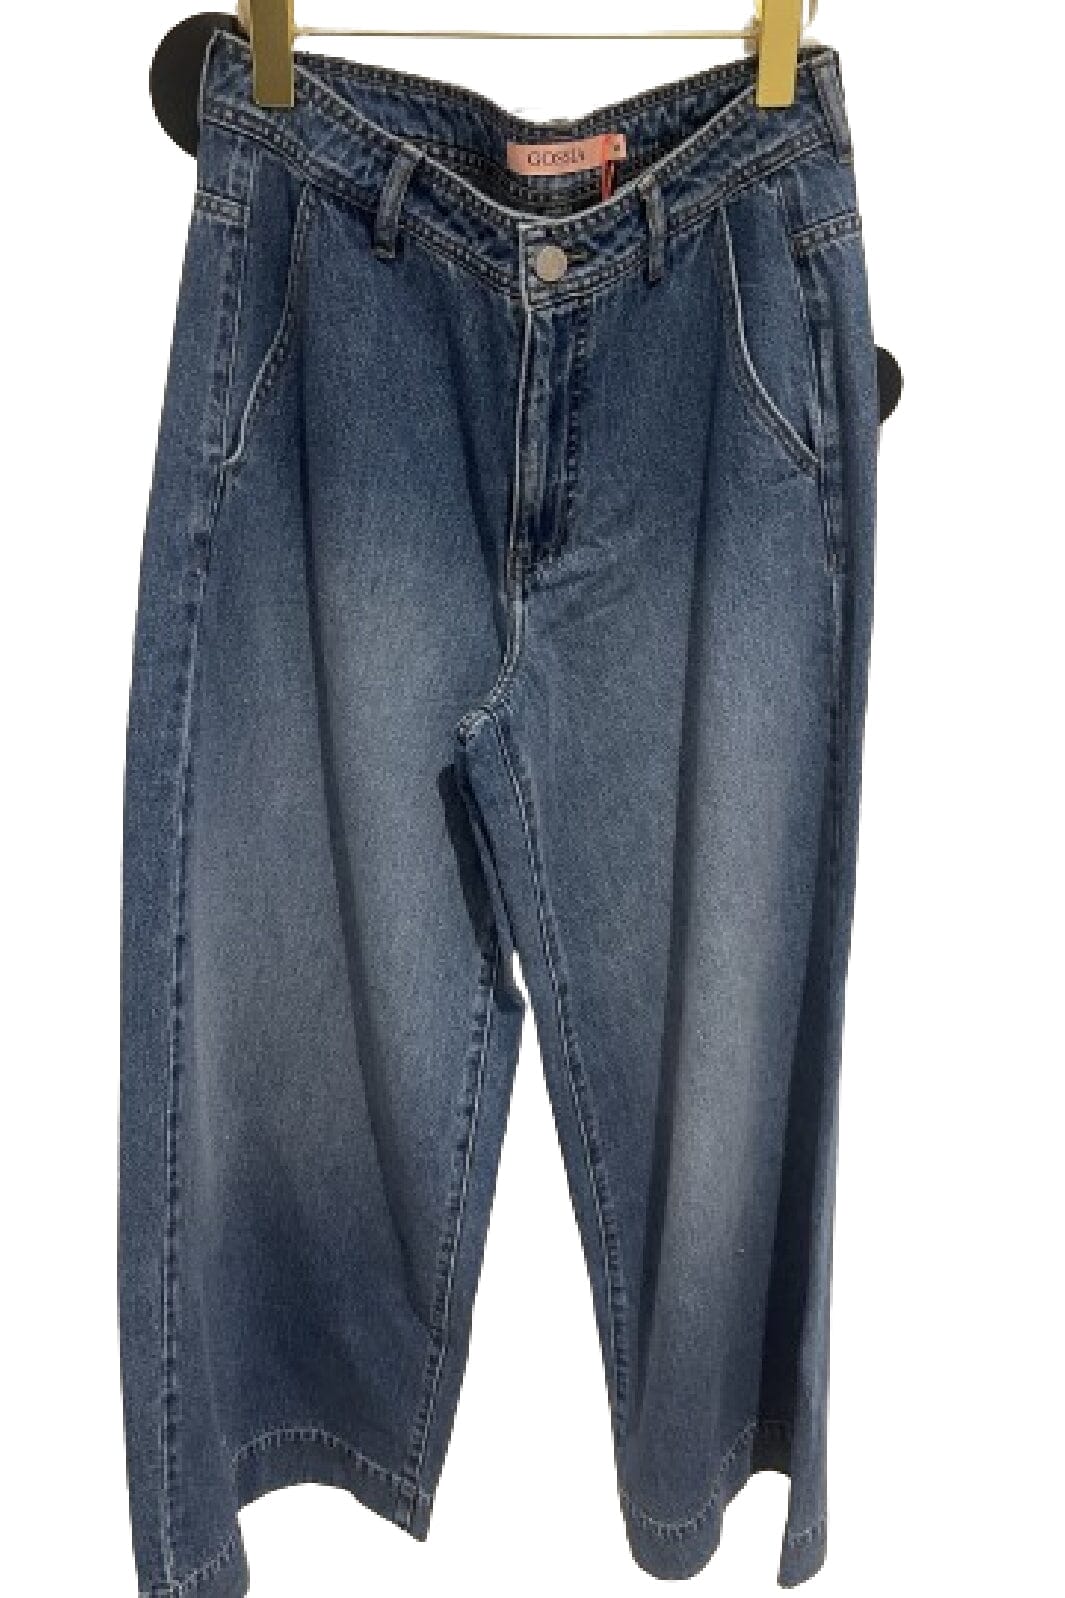 Gossia - Bostongo Jeans - Medium Blue Bukser 